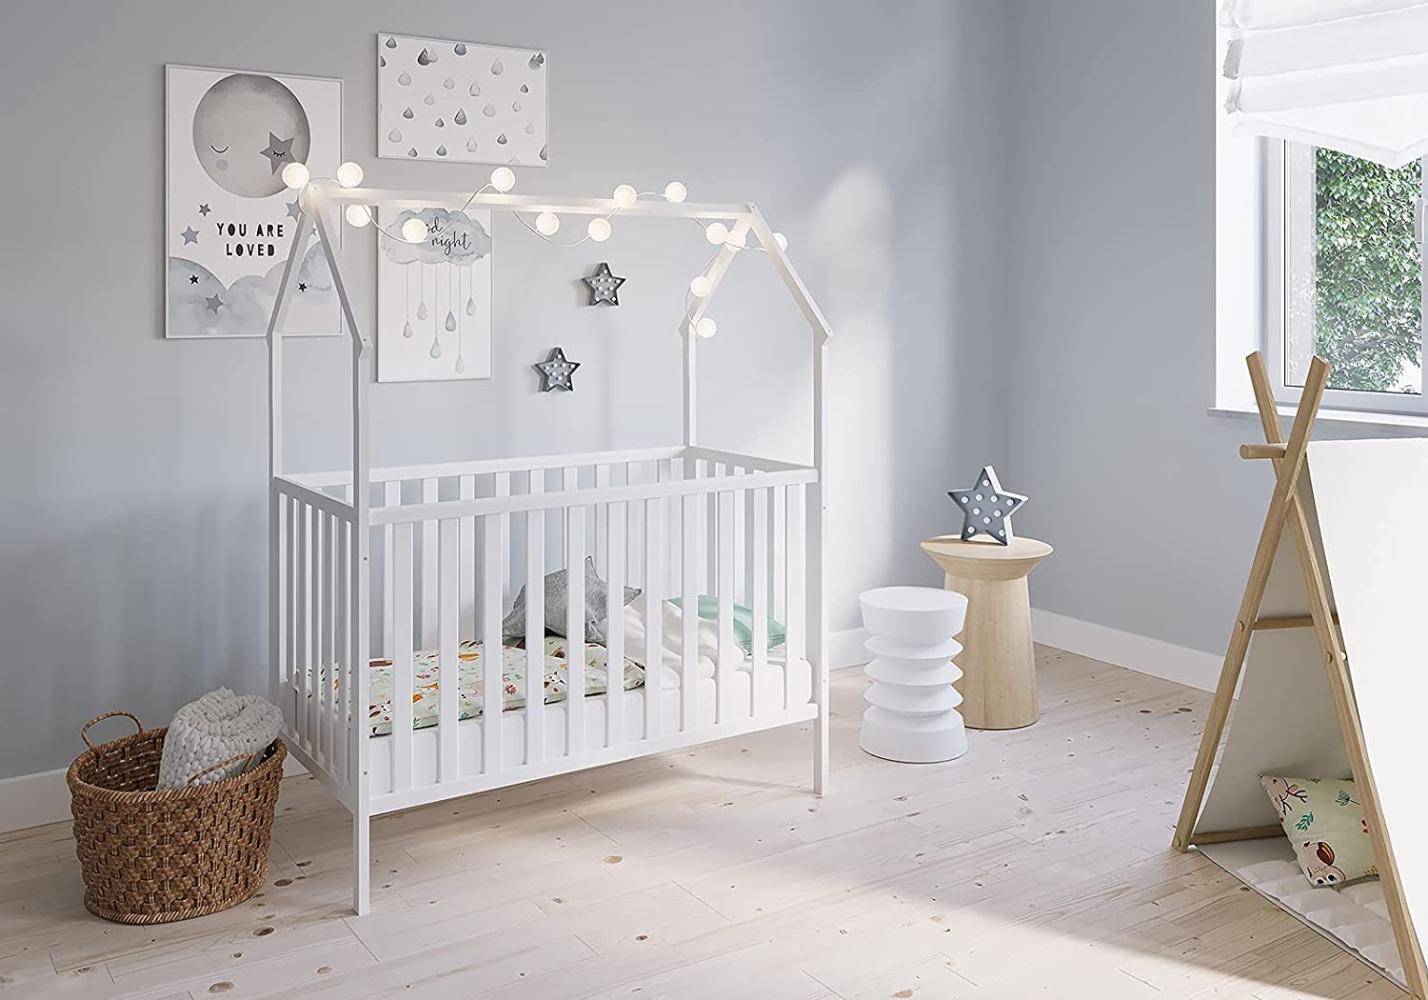 FabiMax 'Schlafmütze' Kinderbett, 60 x 120 cm, weiß, Kiefer massiv, 3-fach höhenverstellbar, umbaubar Bild 1